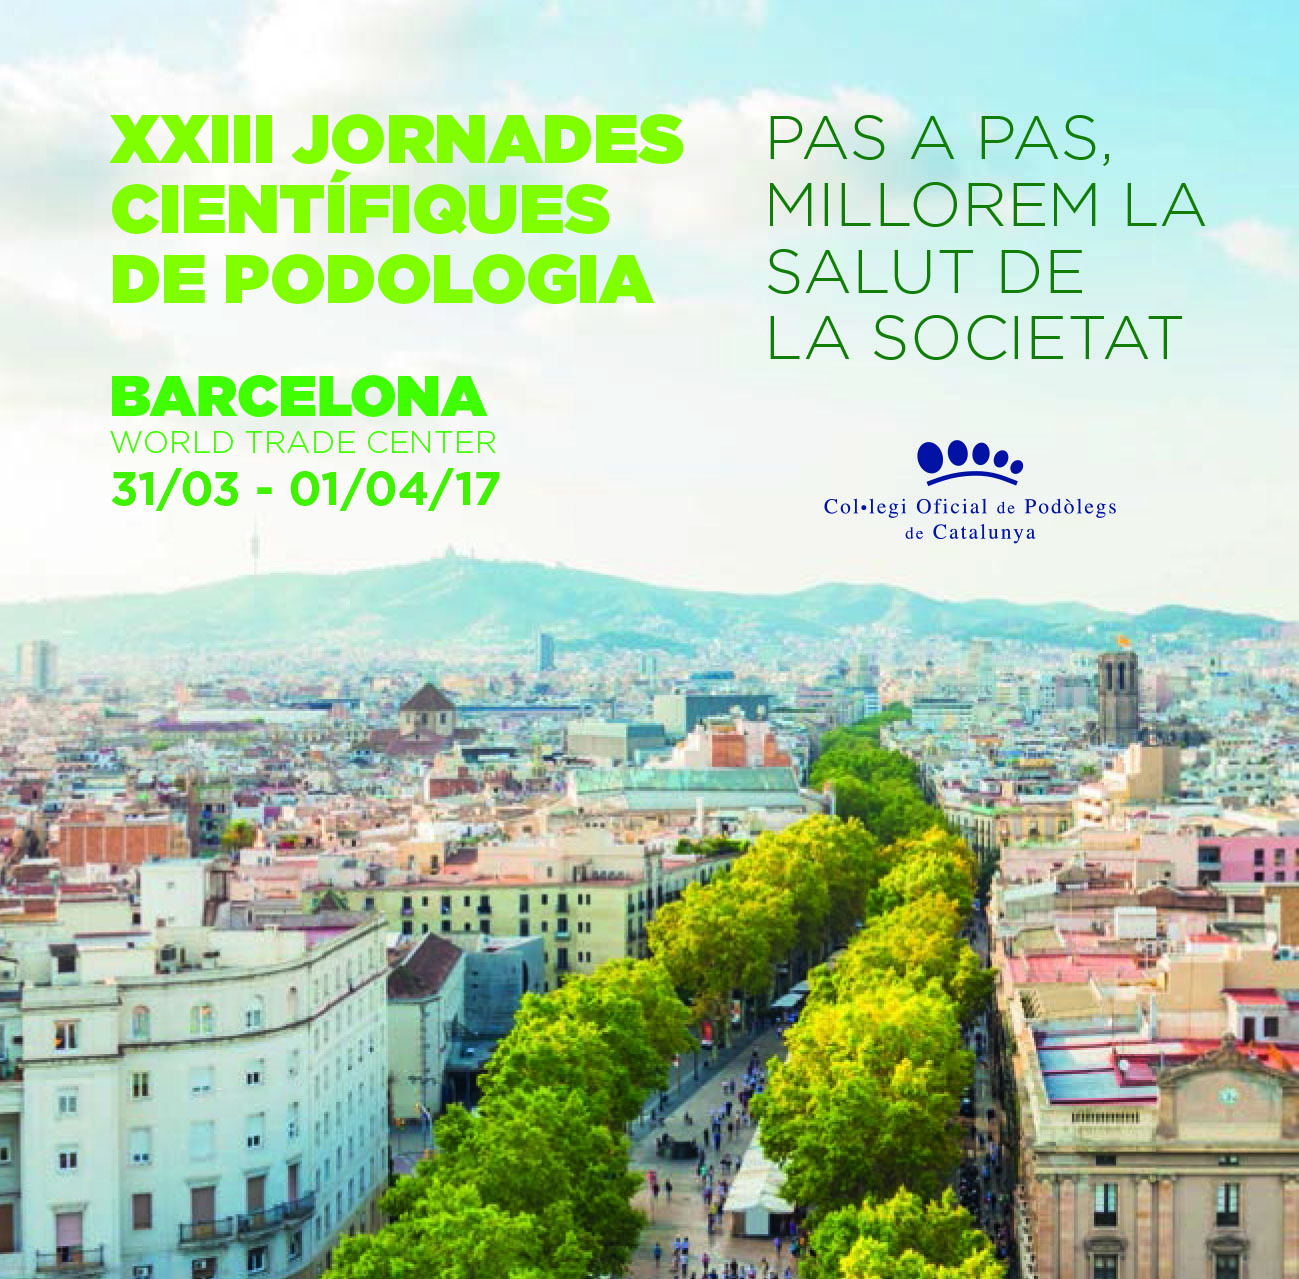 XXIII Jornades Cientifiques de Podologìa a Barcelona